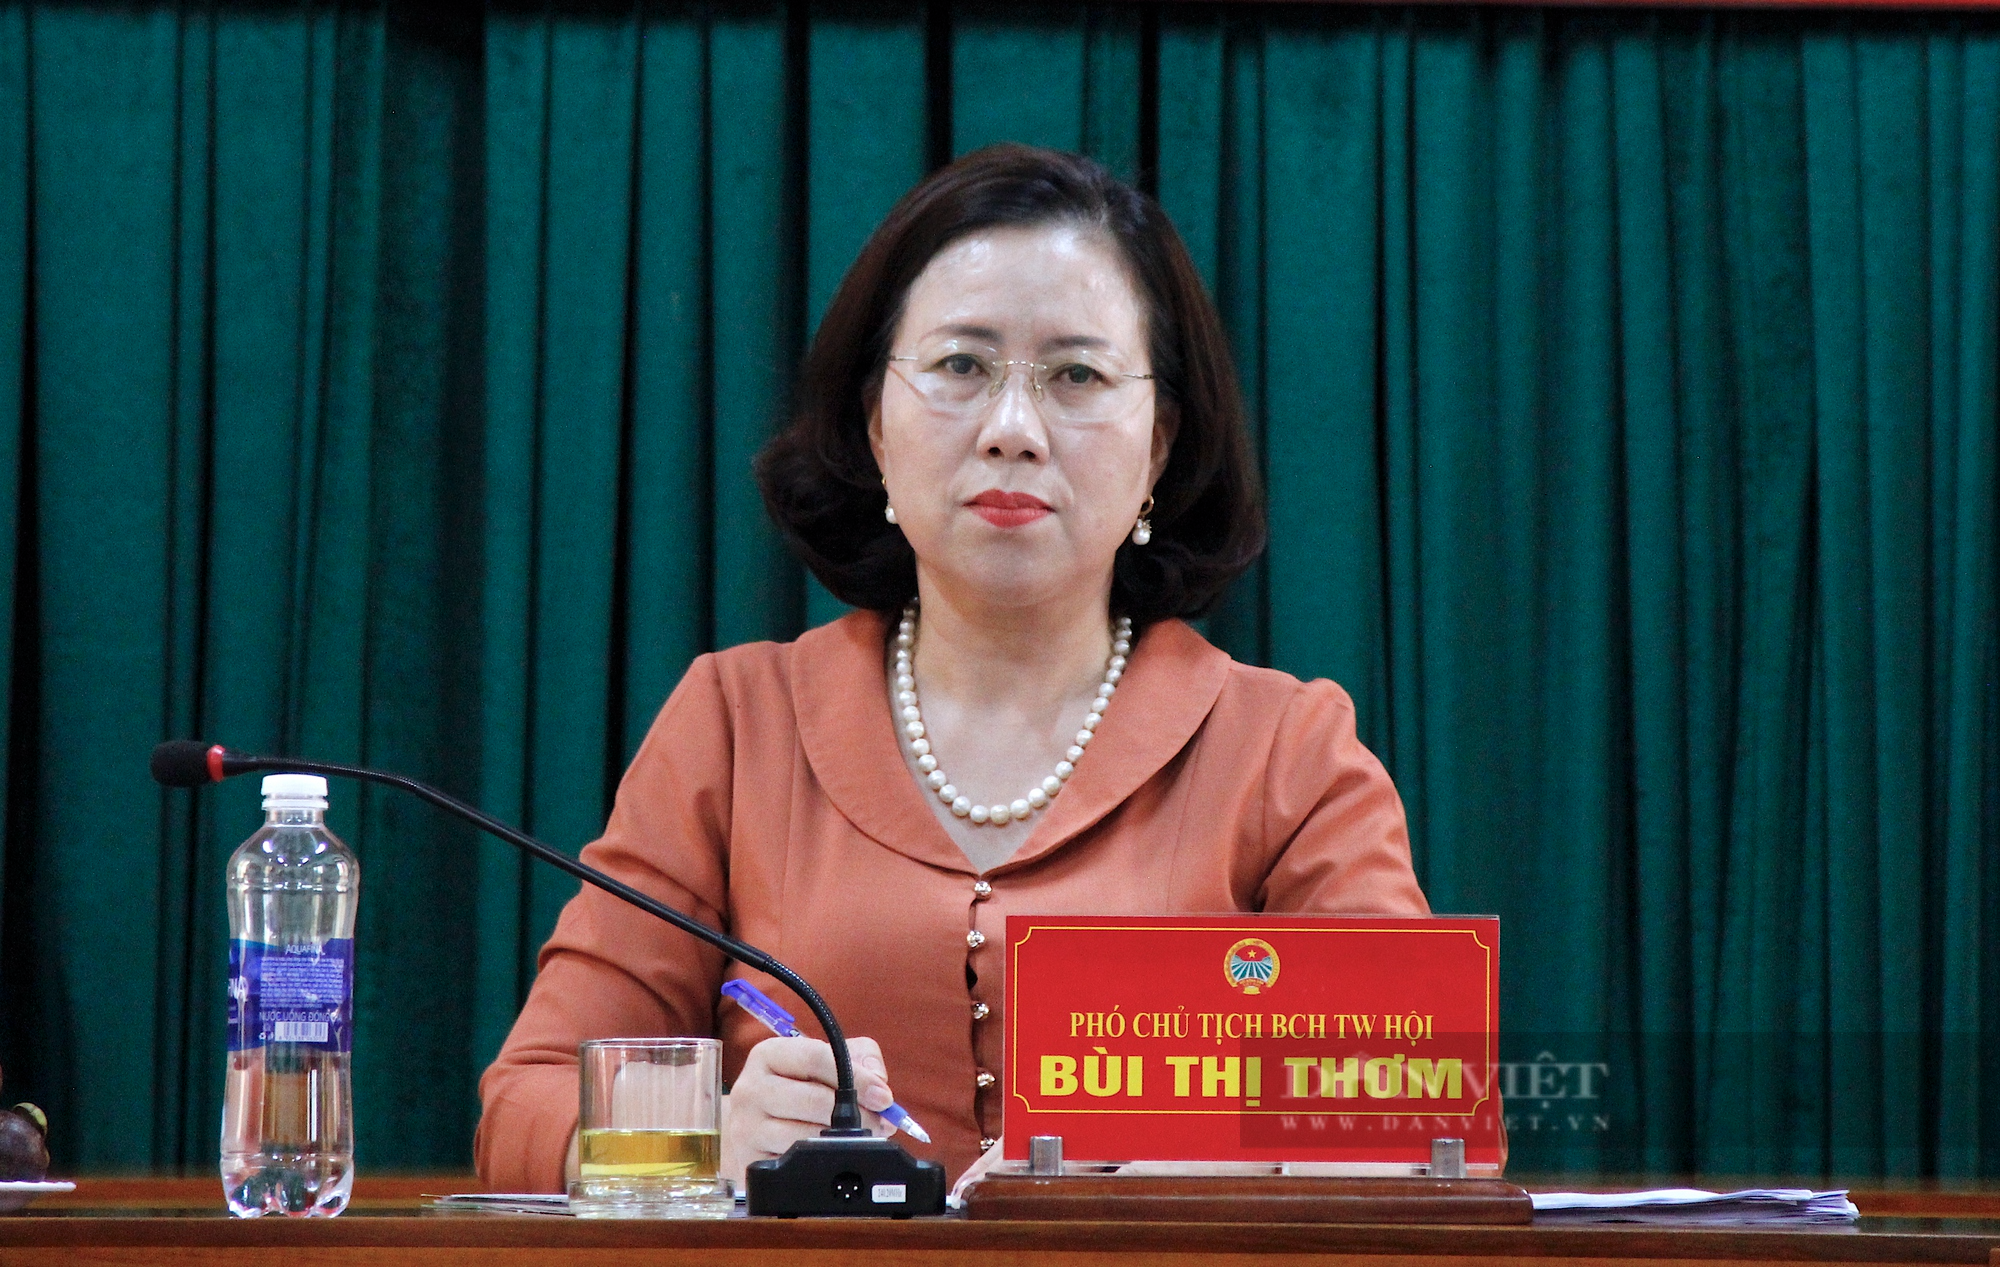 Phó Chủ tịch Trung ương Hội ND Bùi Thị Thơm: Sản xuất nông sản phải phù hợp nhu cầu thị trường - Ảnh 3.